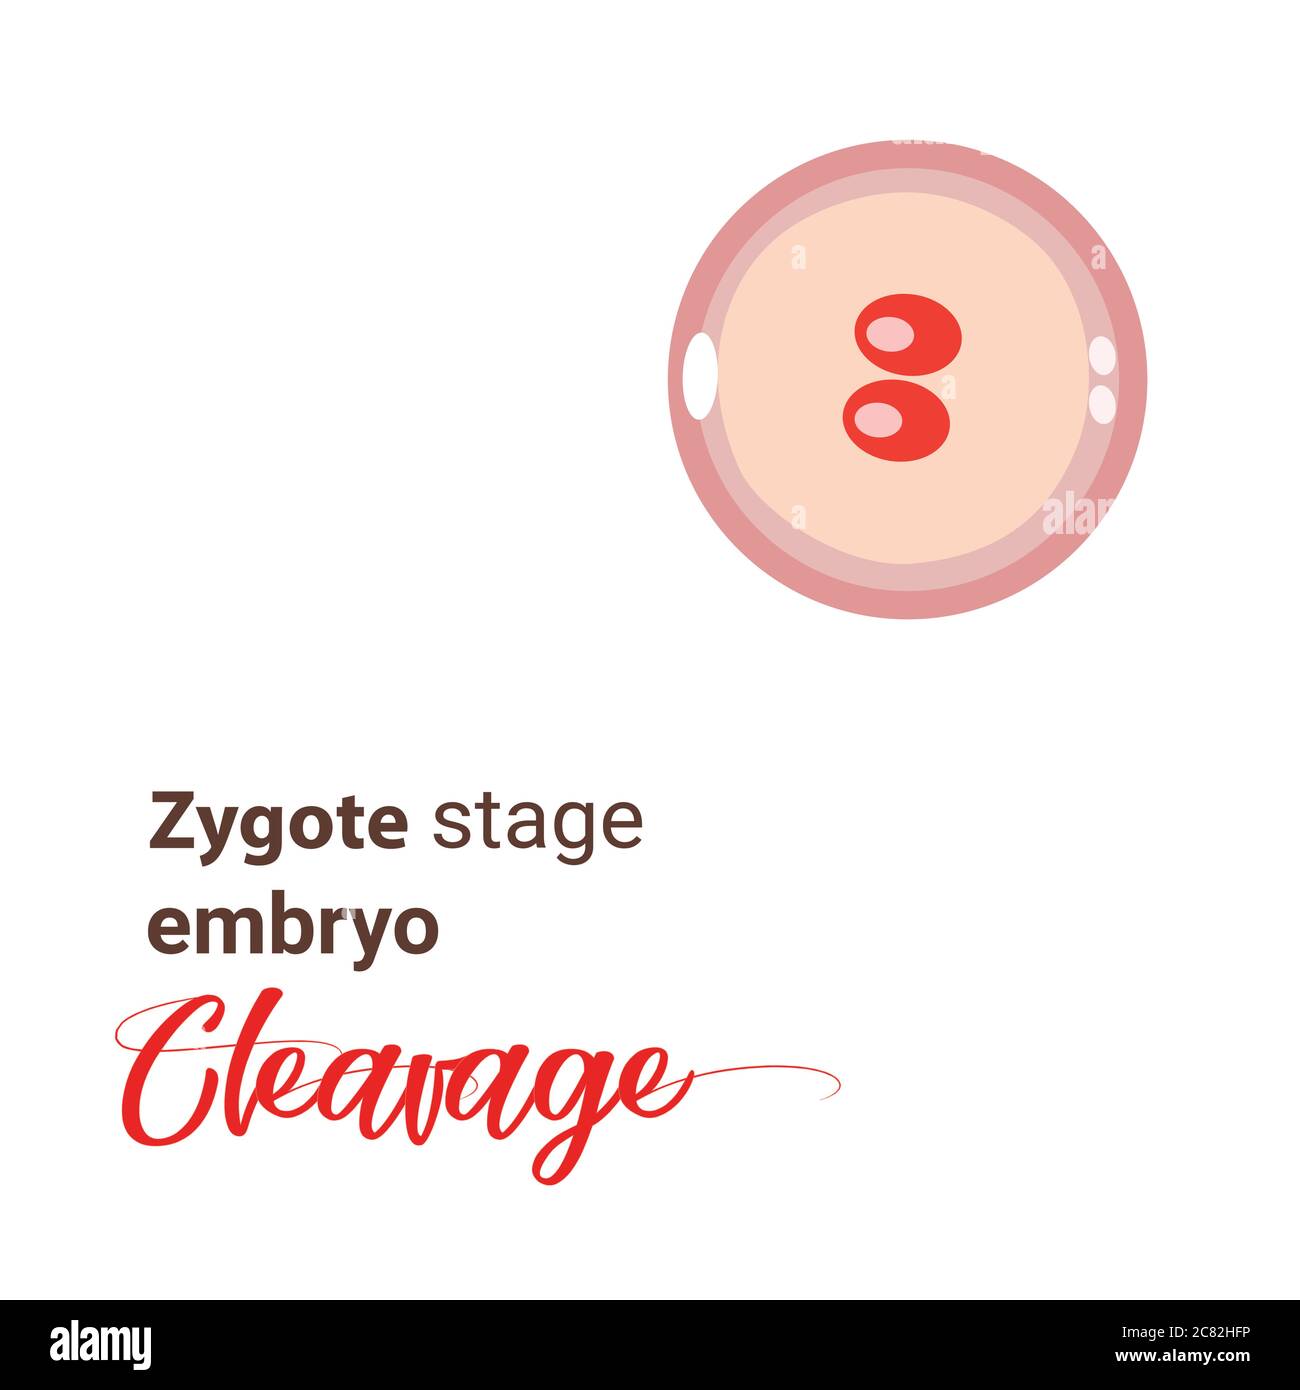 Illustrazione dell'embrione dello stadio zigote. Icona dello stadio cellulare zigote. Cellula zigote di scissione vettoriale. Illustrazione della scissione Illustrazione Vettoriale